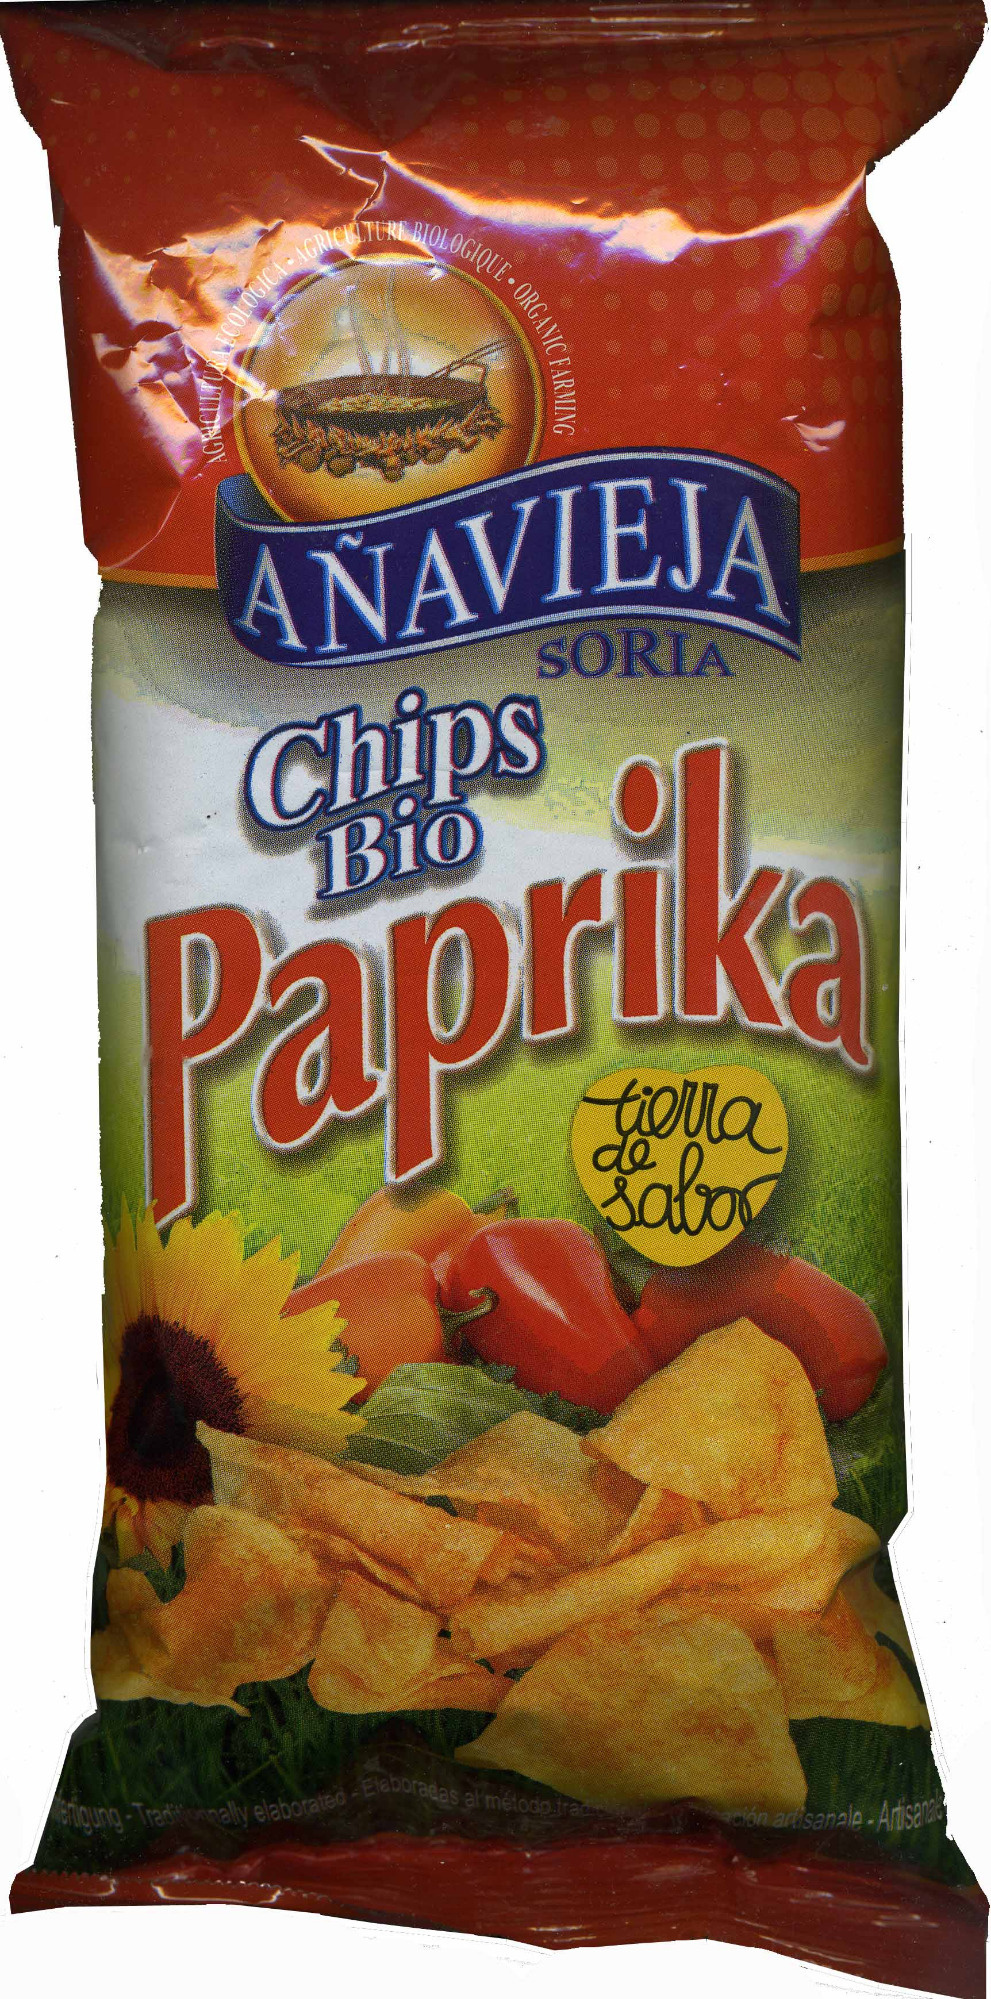 Chips bio paprika - Producte - es